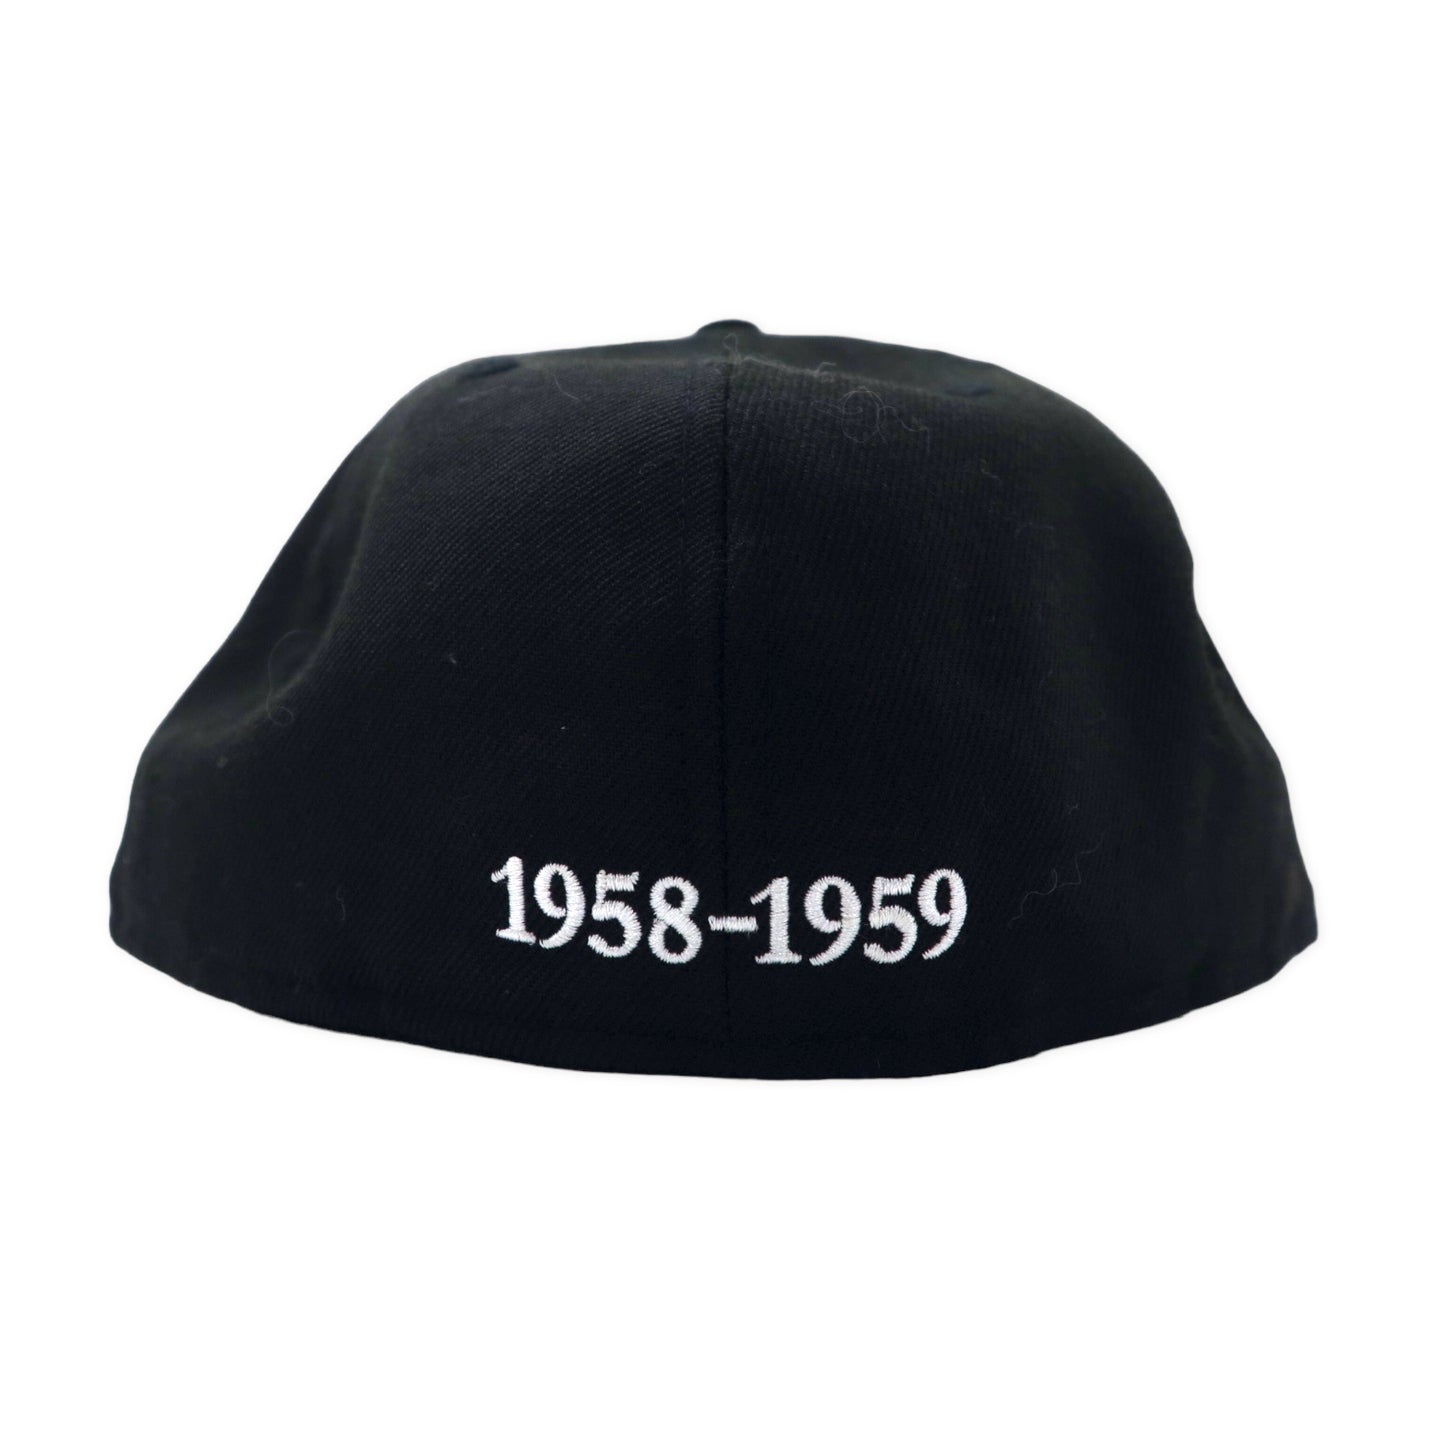 NEWERA ベースボールキャップ 帽子 59.6cm ブラック NPB クラシック 大阪タイガース 1958-1959